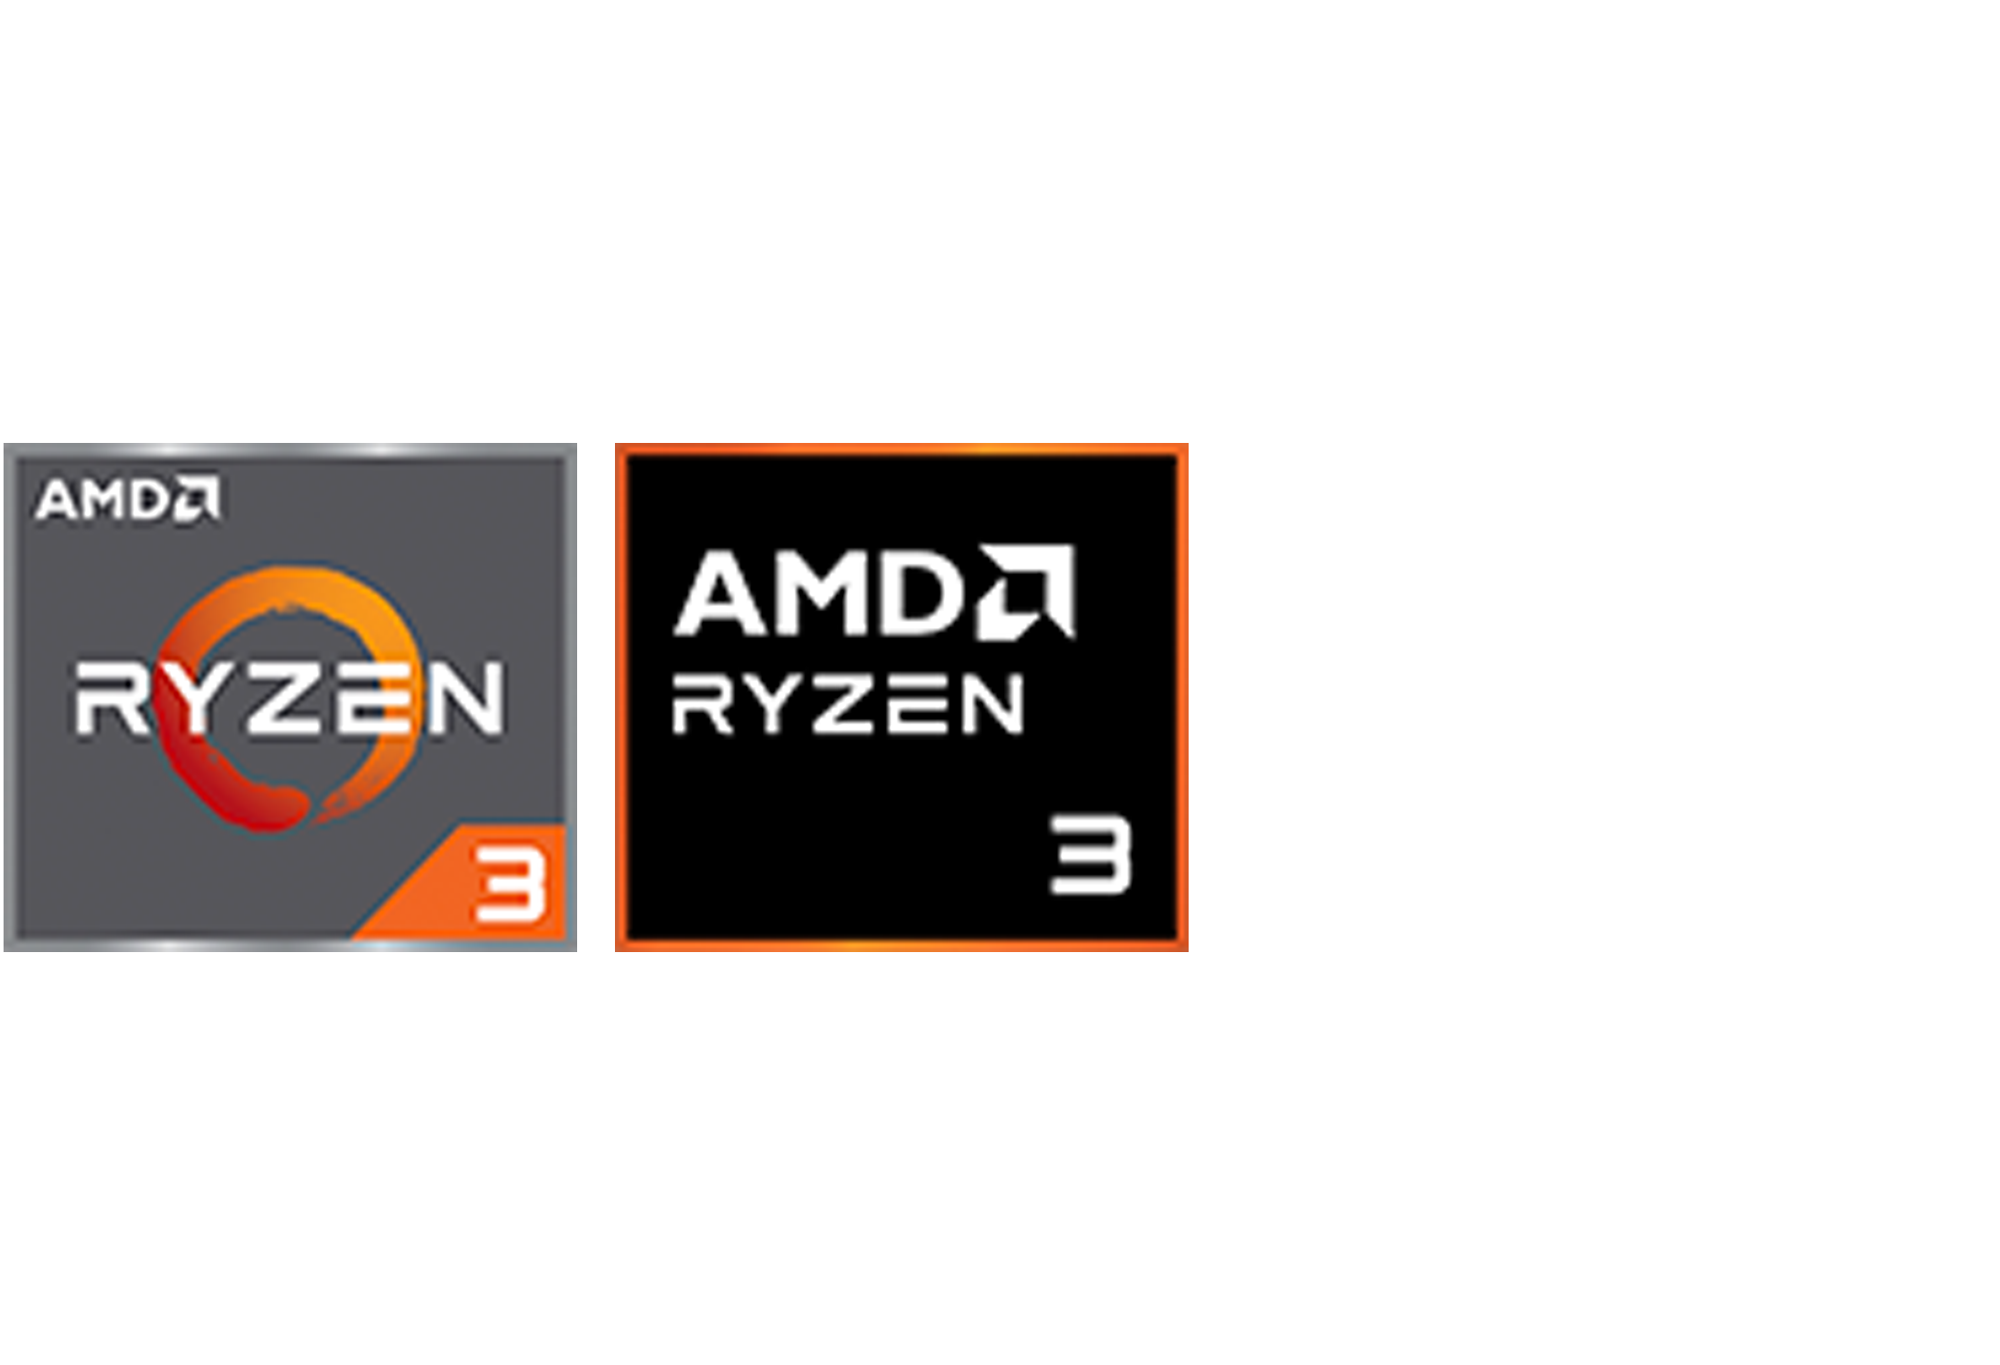 AMD Ryzen3 logoer